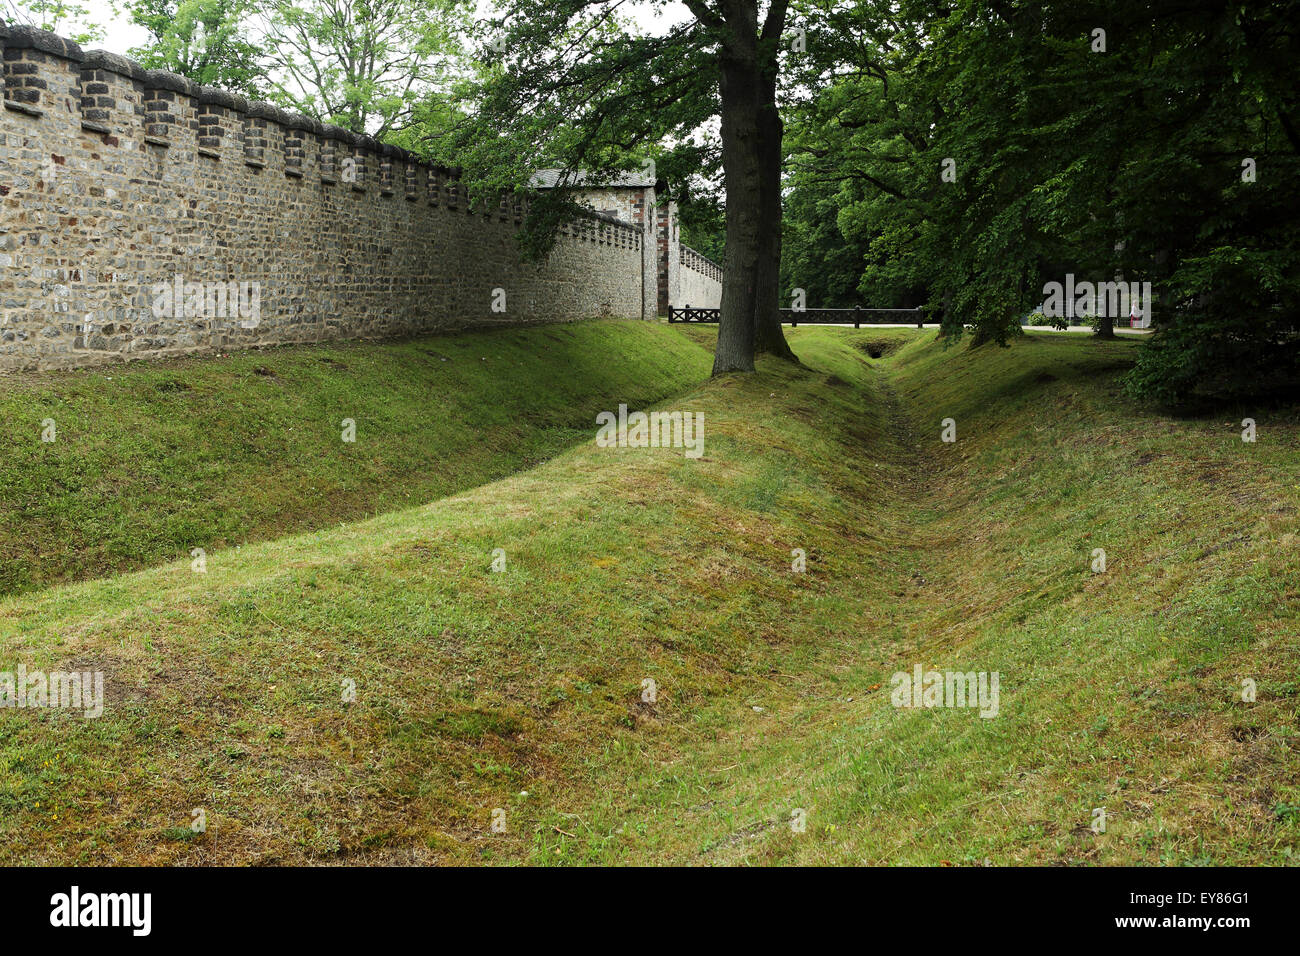 Las obras de explanación por la muralla de la fortaleza romana reconstruida en Saalburg cerca de Bad Homburg, Alemania. Foto de stock